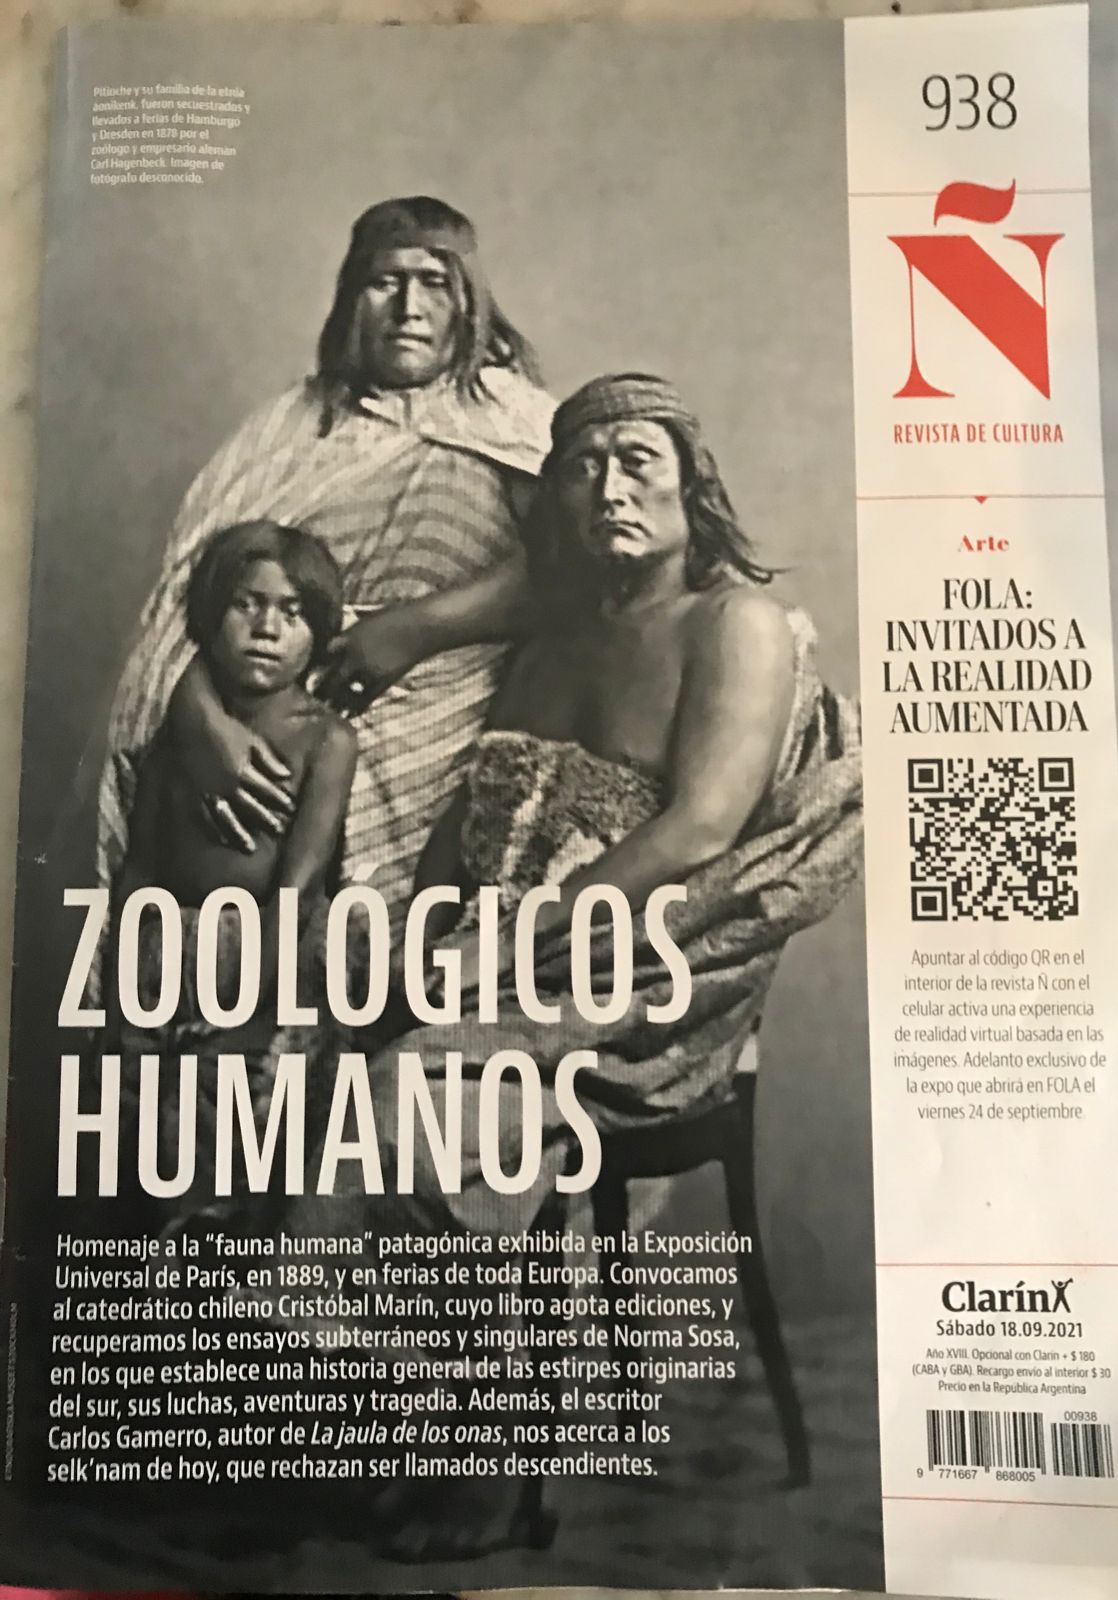 Sobre Tehuelches y Fueguinos en Zoológicos Humanos